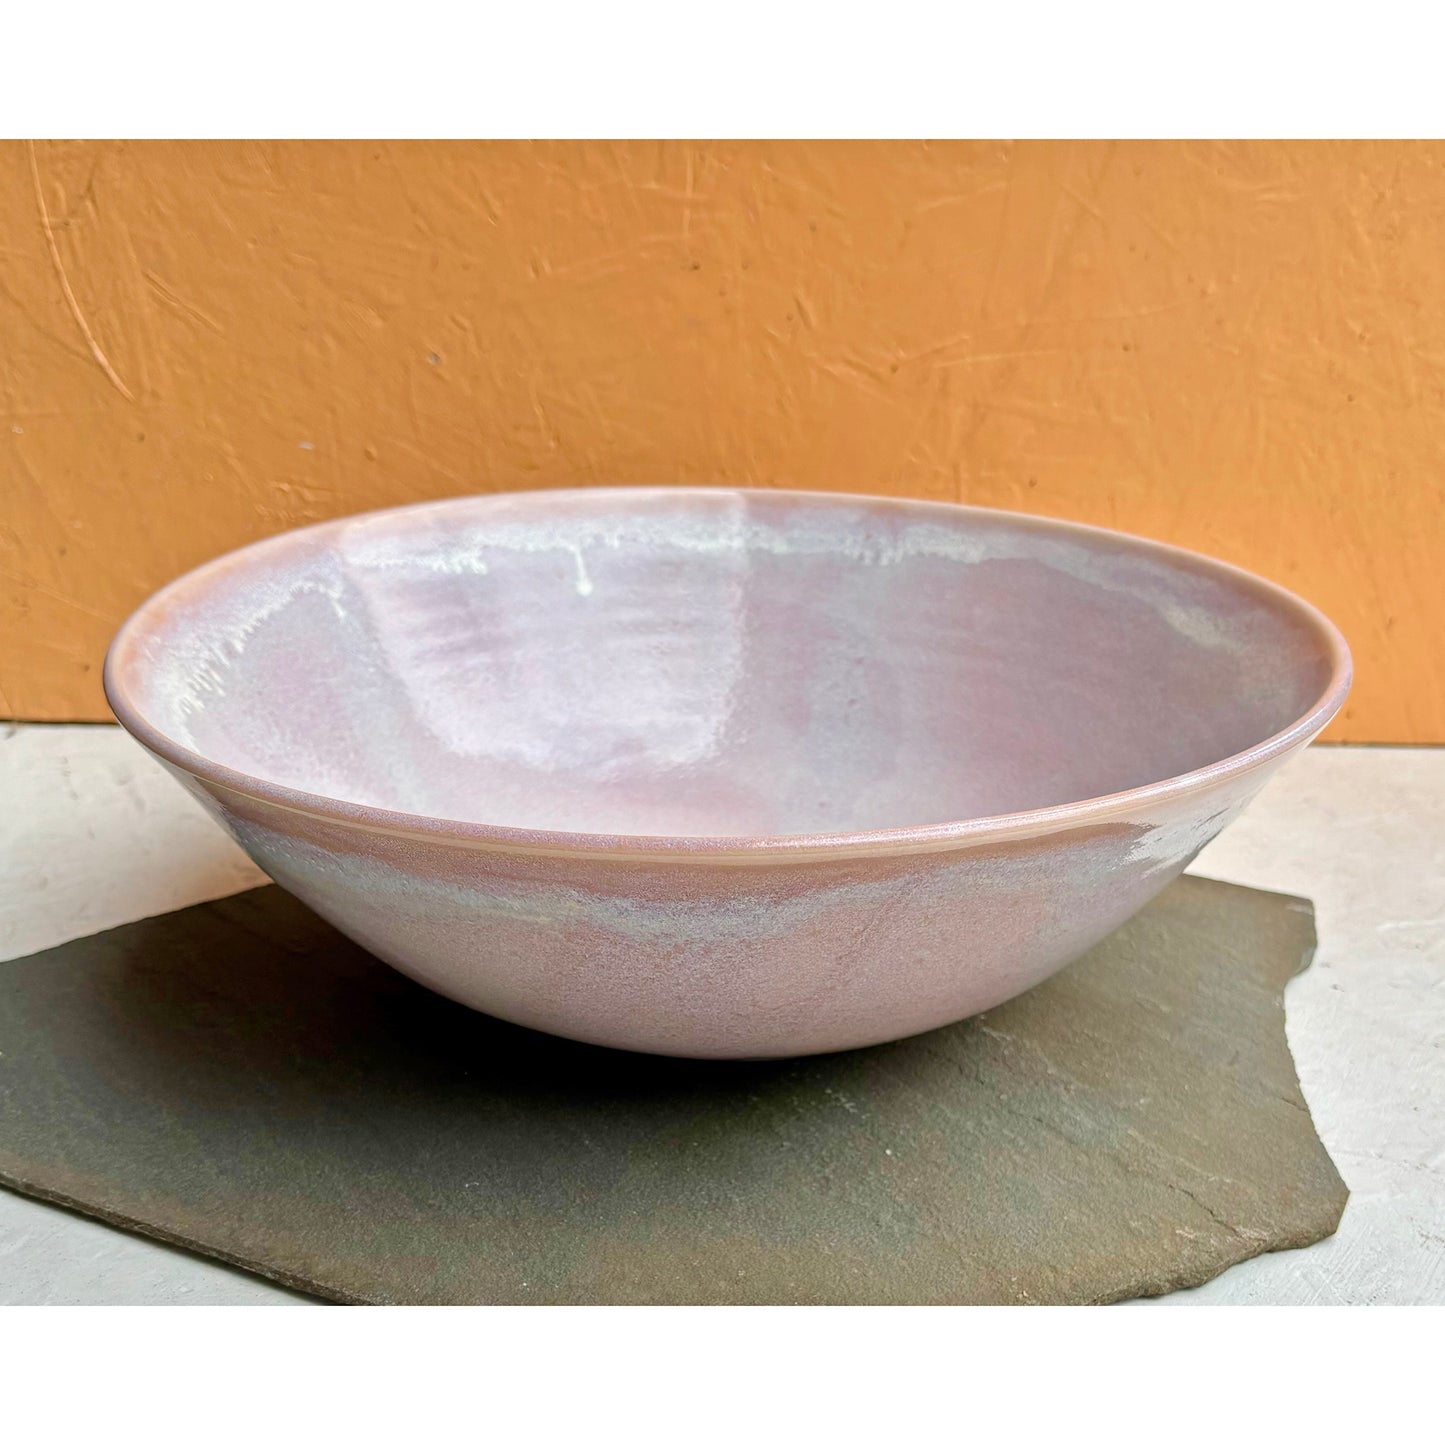 Porcelain Serving Bowl - Frosted Blush